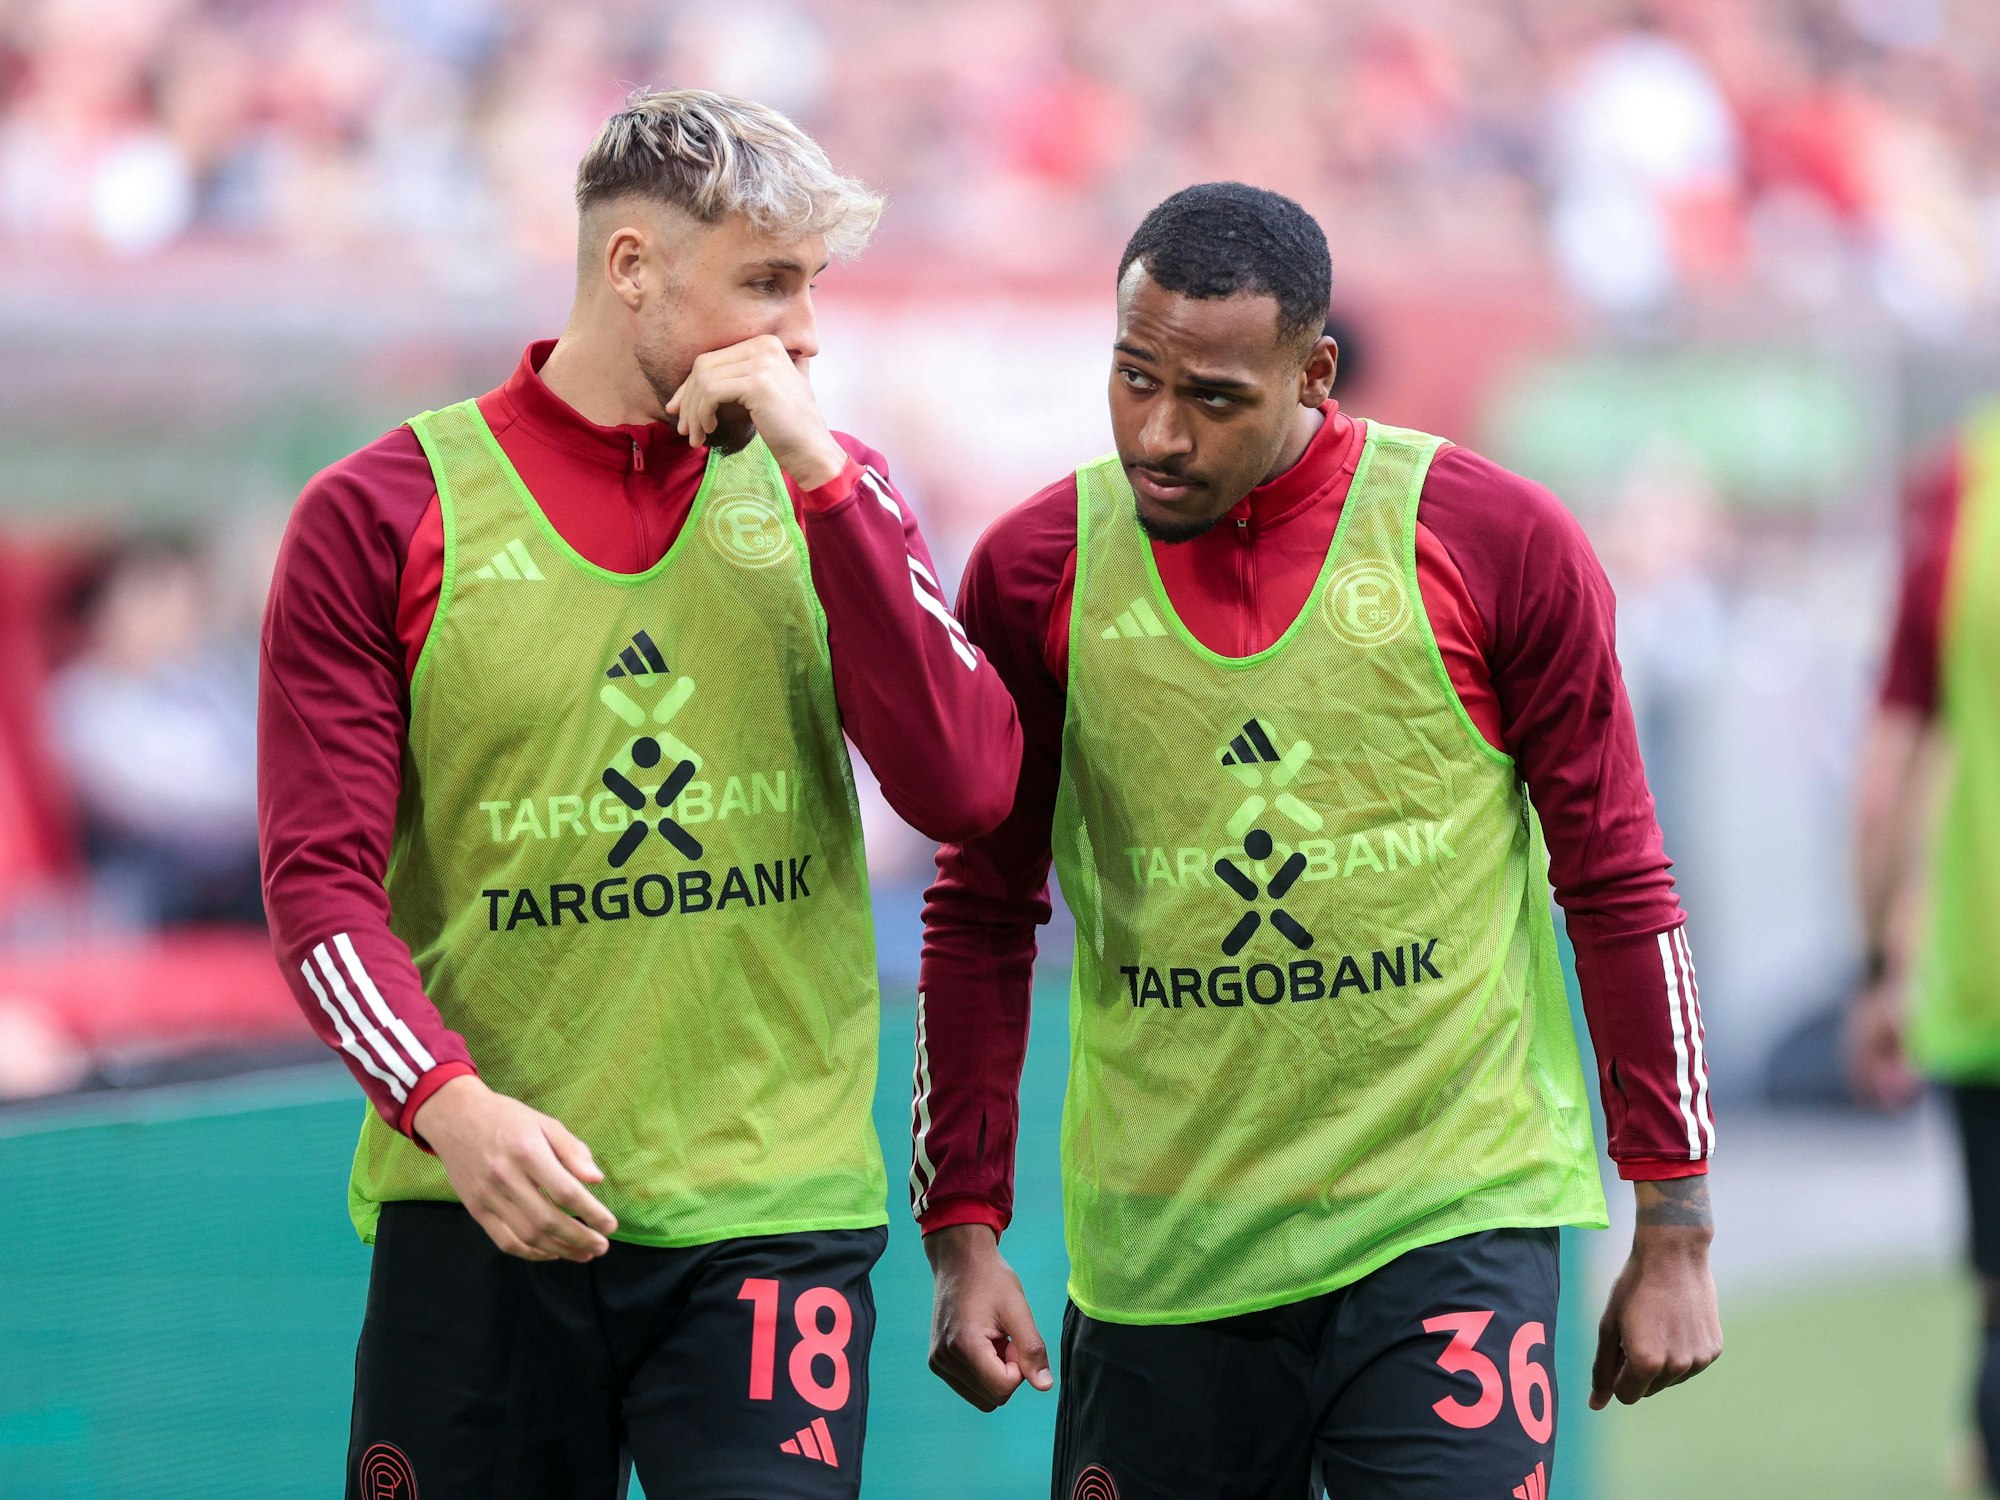 Die Düsseldorf-Profis Jona Niemiec und Marlon Mustapha unterhalten sich beim Aufwärmen am Seitenrand.